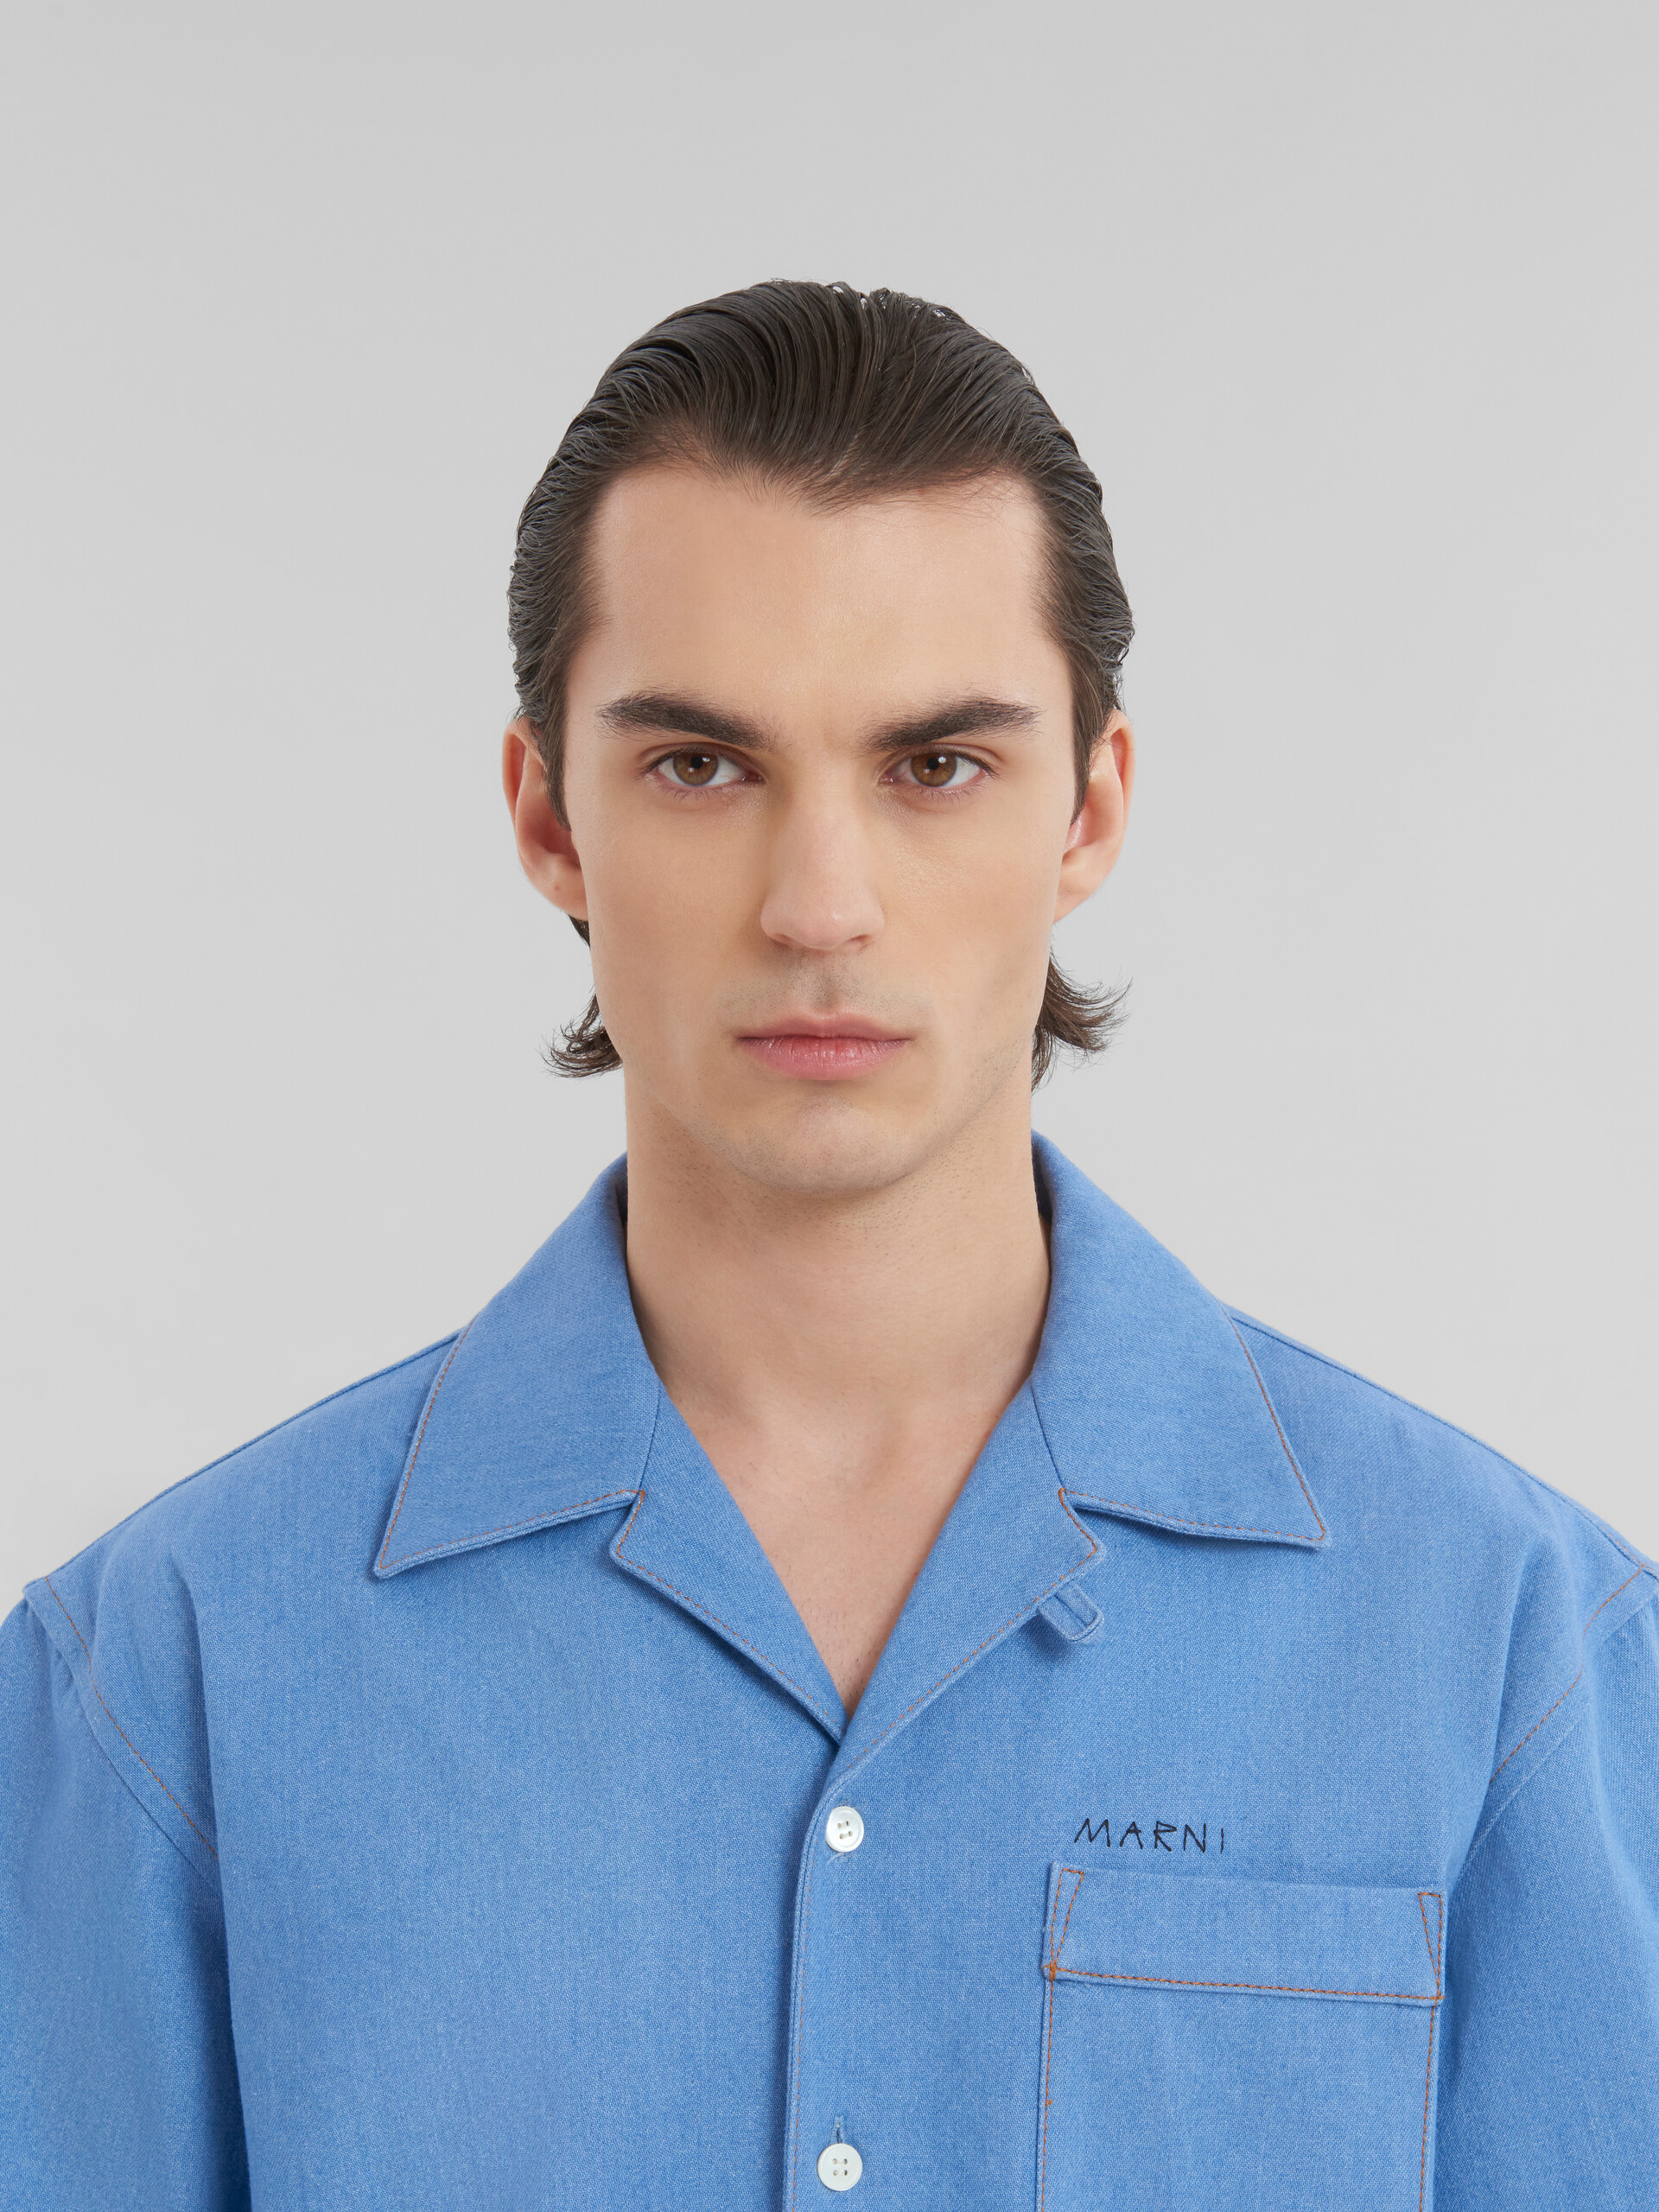 Blaues Bowlinghemd aus Denim mit Marni-Flickenlogo - Hemden - Image 4